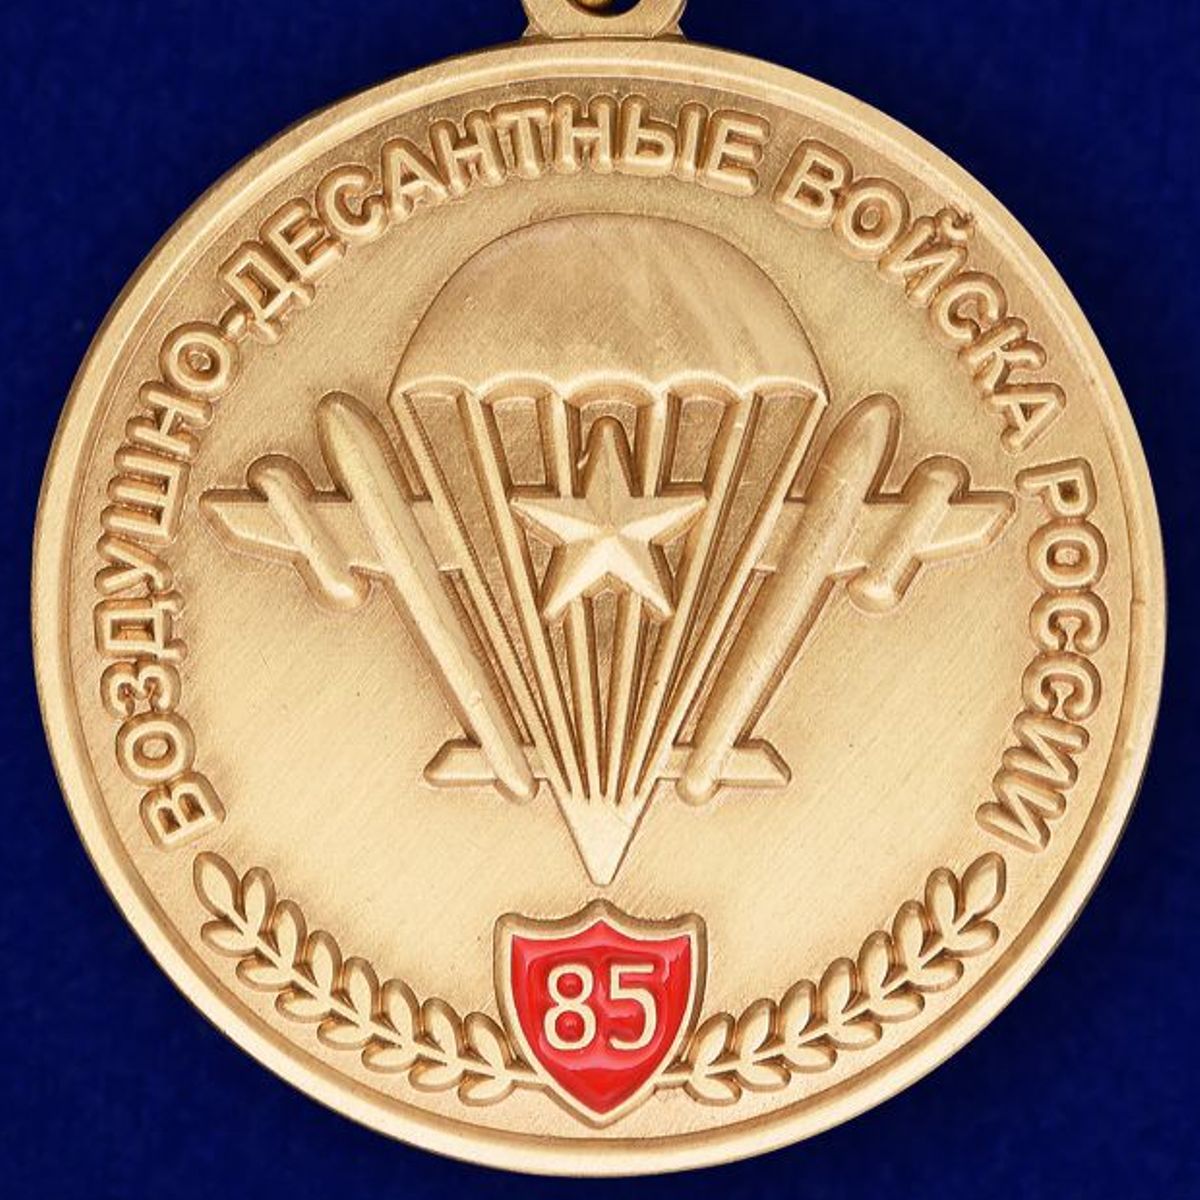 Юбилейная медаль "85 лет ВДВ" в бархатистом футляре из флока с прозрачной крышкой 